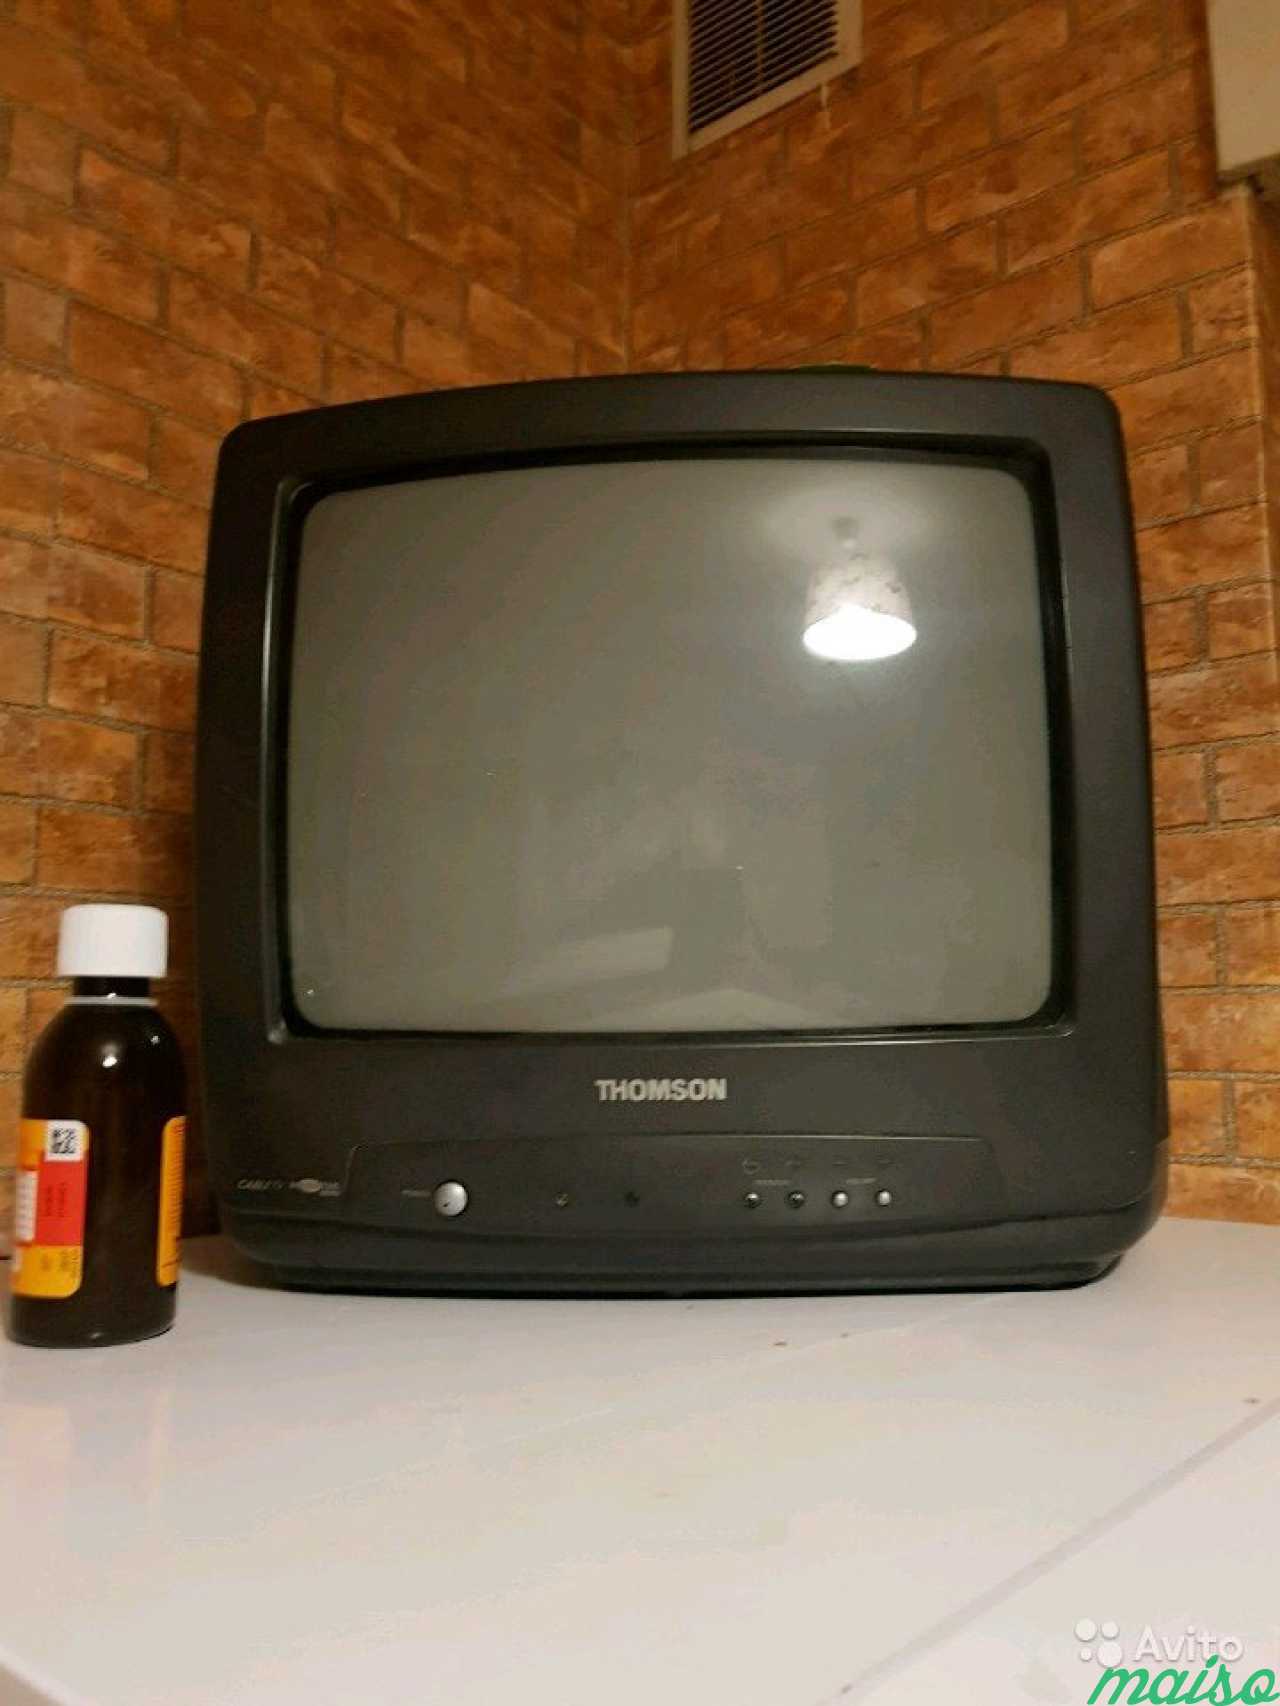 Купить телевизор на авито недорого в москве. Телевизор авито. Самый маленький дешевый телевизор за 500 рублей. Телевизор СПБ. Авито телевизоры б/у.